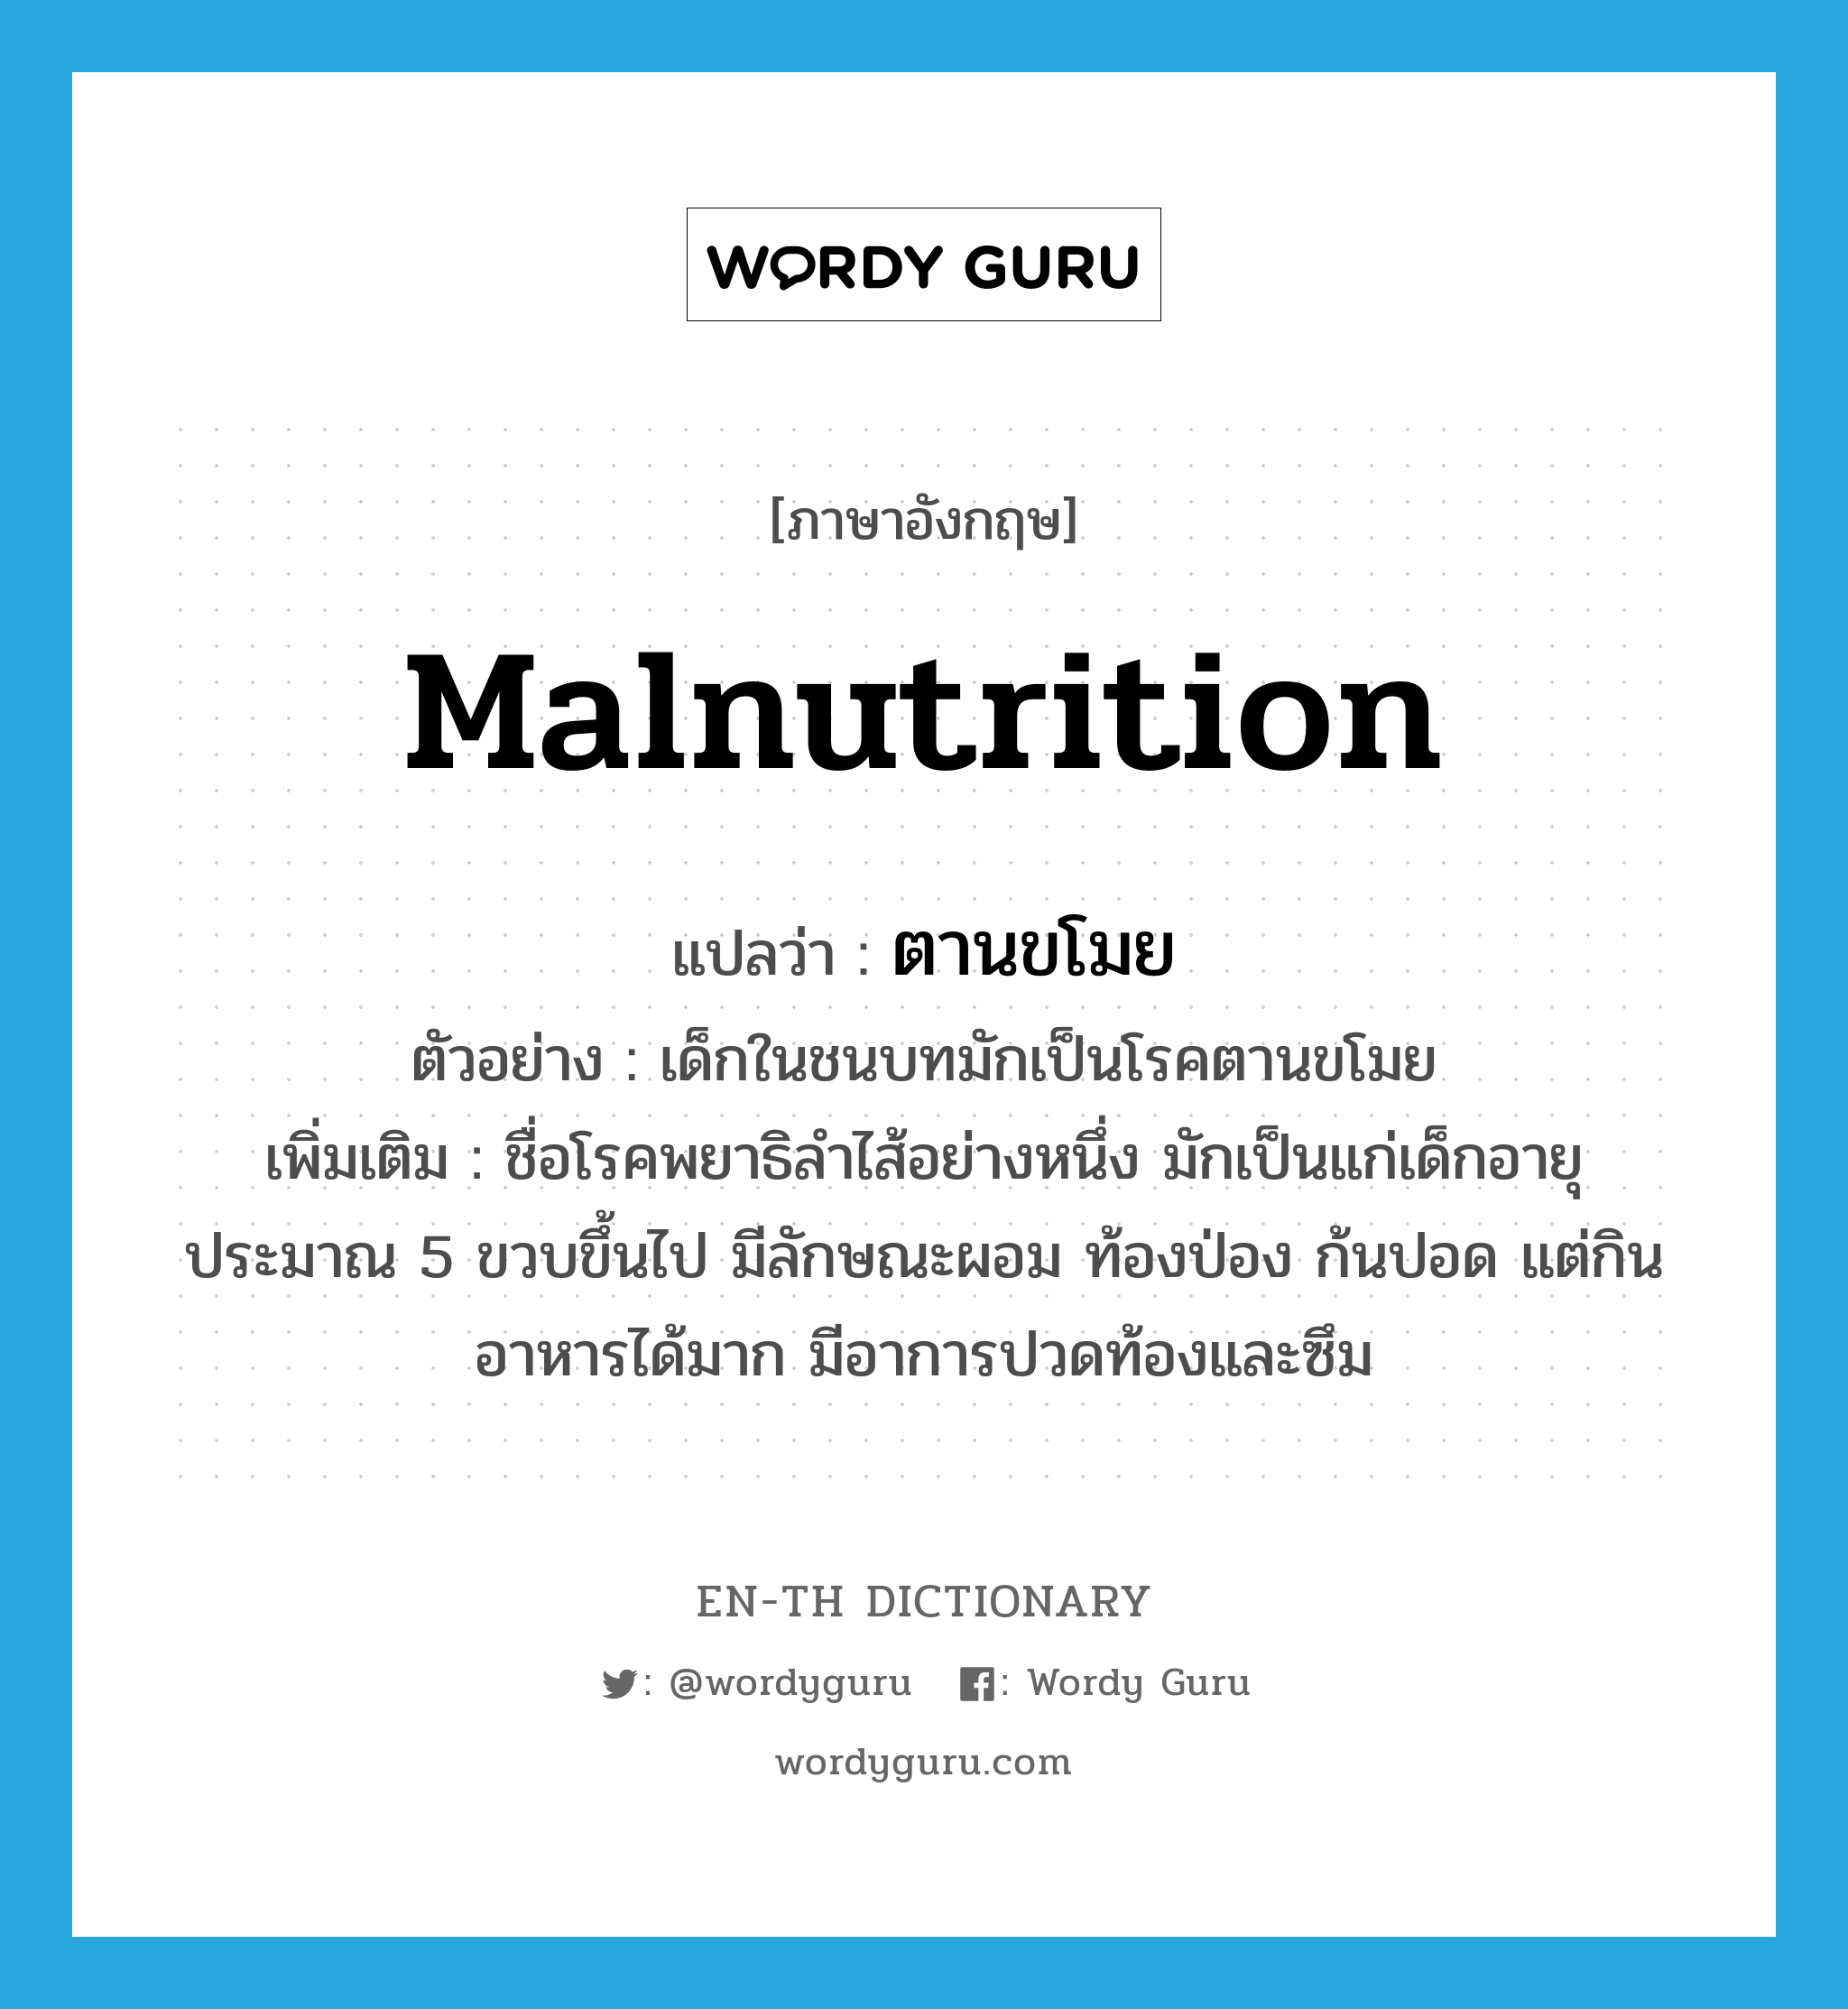 malnutrition แปลว่า?, คำศัพท์ภาษาอังกฤษ malnutrition แปลว่า ตานขโมย ประเภท N ตัวอย่าง เด็กในชนบทมักเป็นโรคตานขโมย เพิ่มเติม ชื่อโรคพยาธิลำไส้อย่างหนึ่ง มักเป็นแก่เด็กอายุประมาณ 5 ขวบขึ้นไป มีลักษณะผอม ท้องป่อง ก้นปอด แต่กินอาหารได้มาก มีอาการปวดท้องและซึม หมวด N